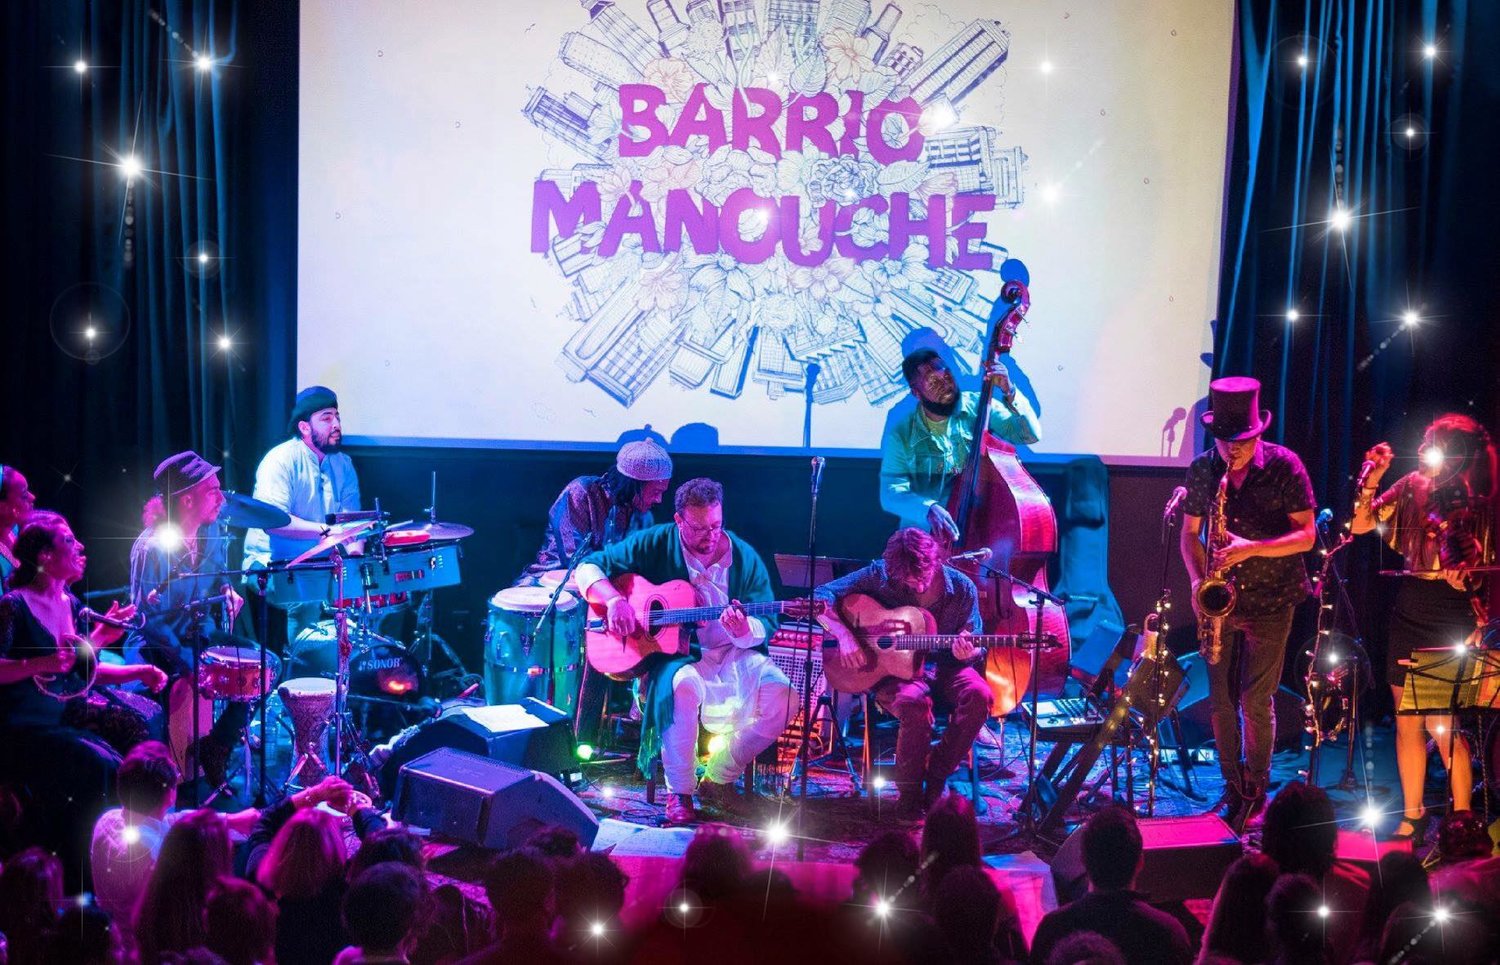 Barrio Manouche logo banner image